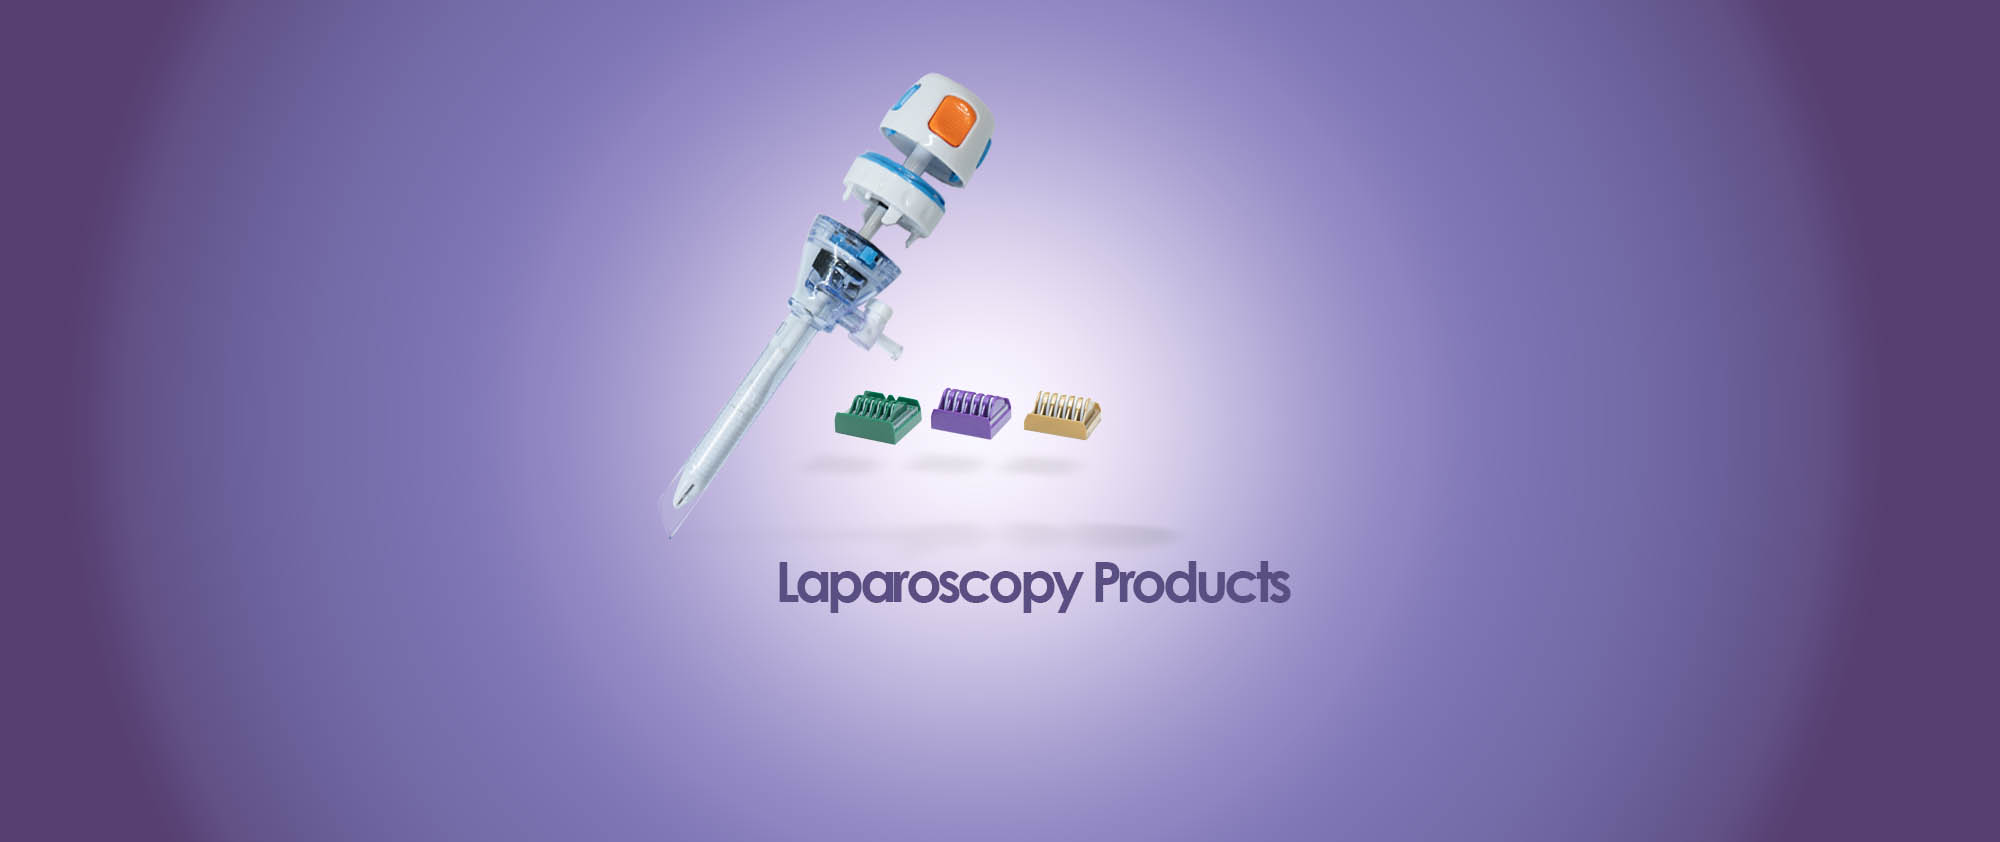 محصولات مصرفی لاپاراسکوپی